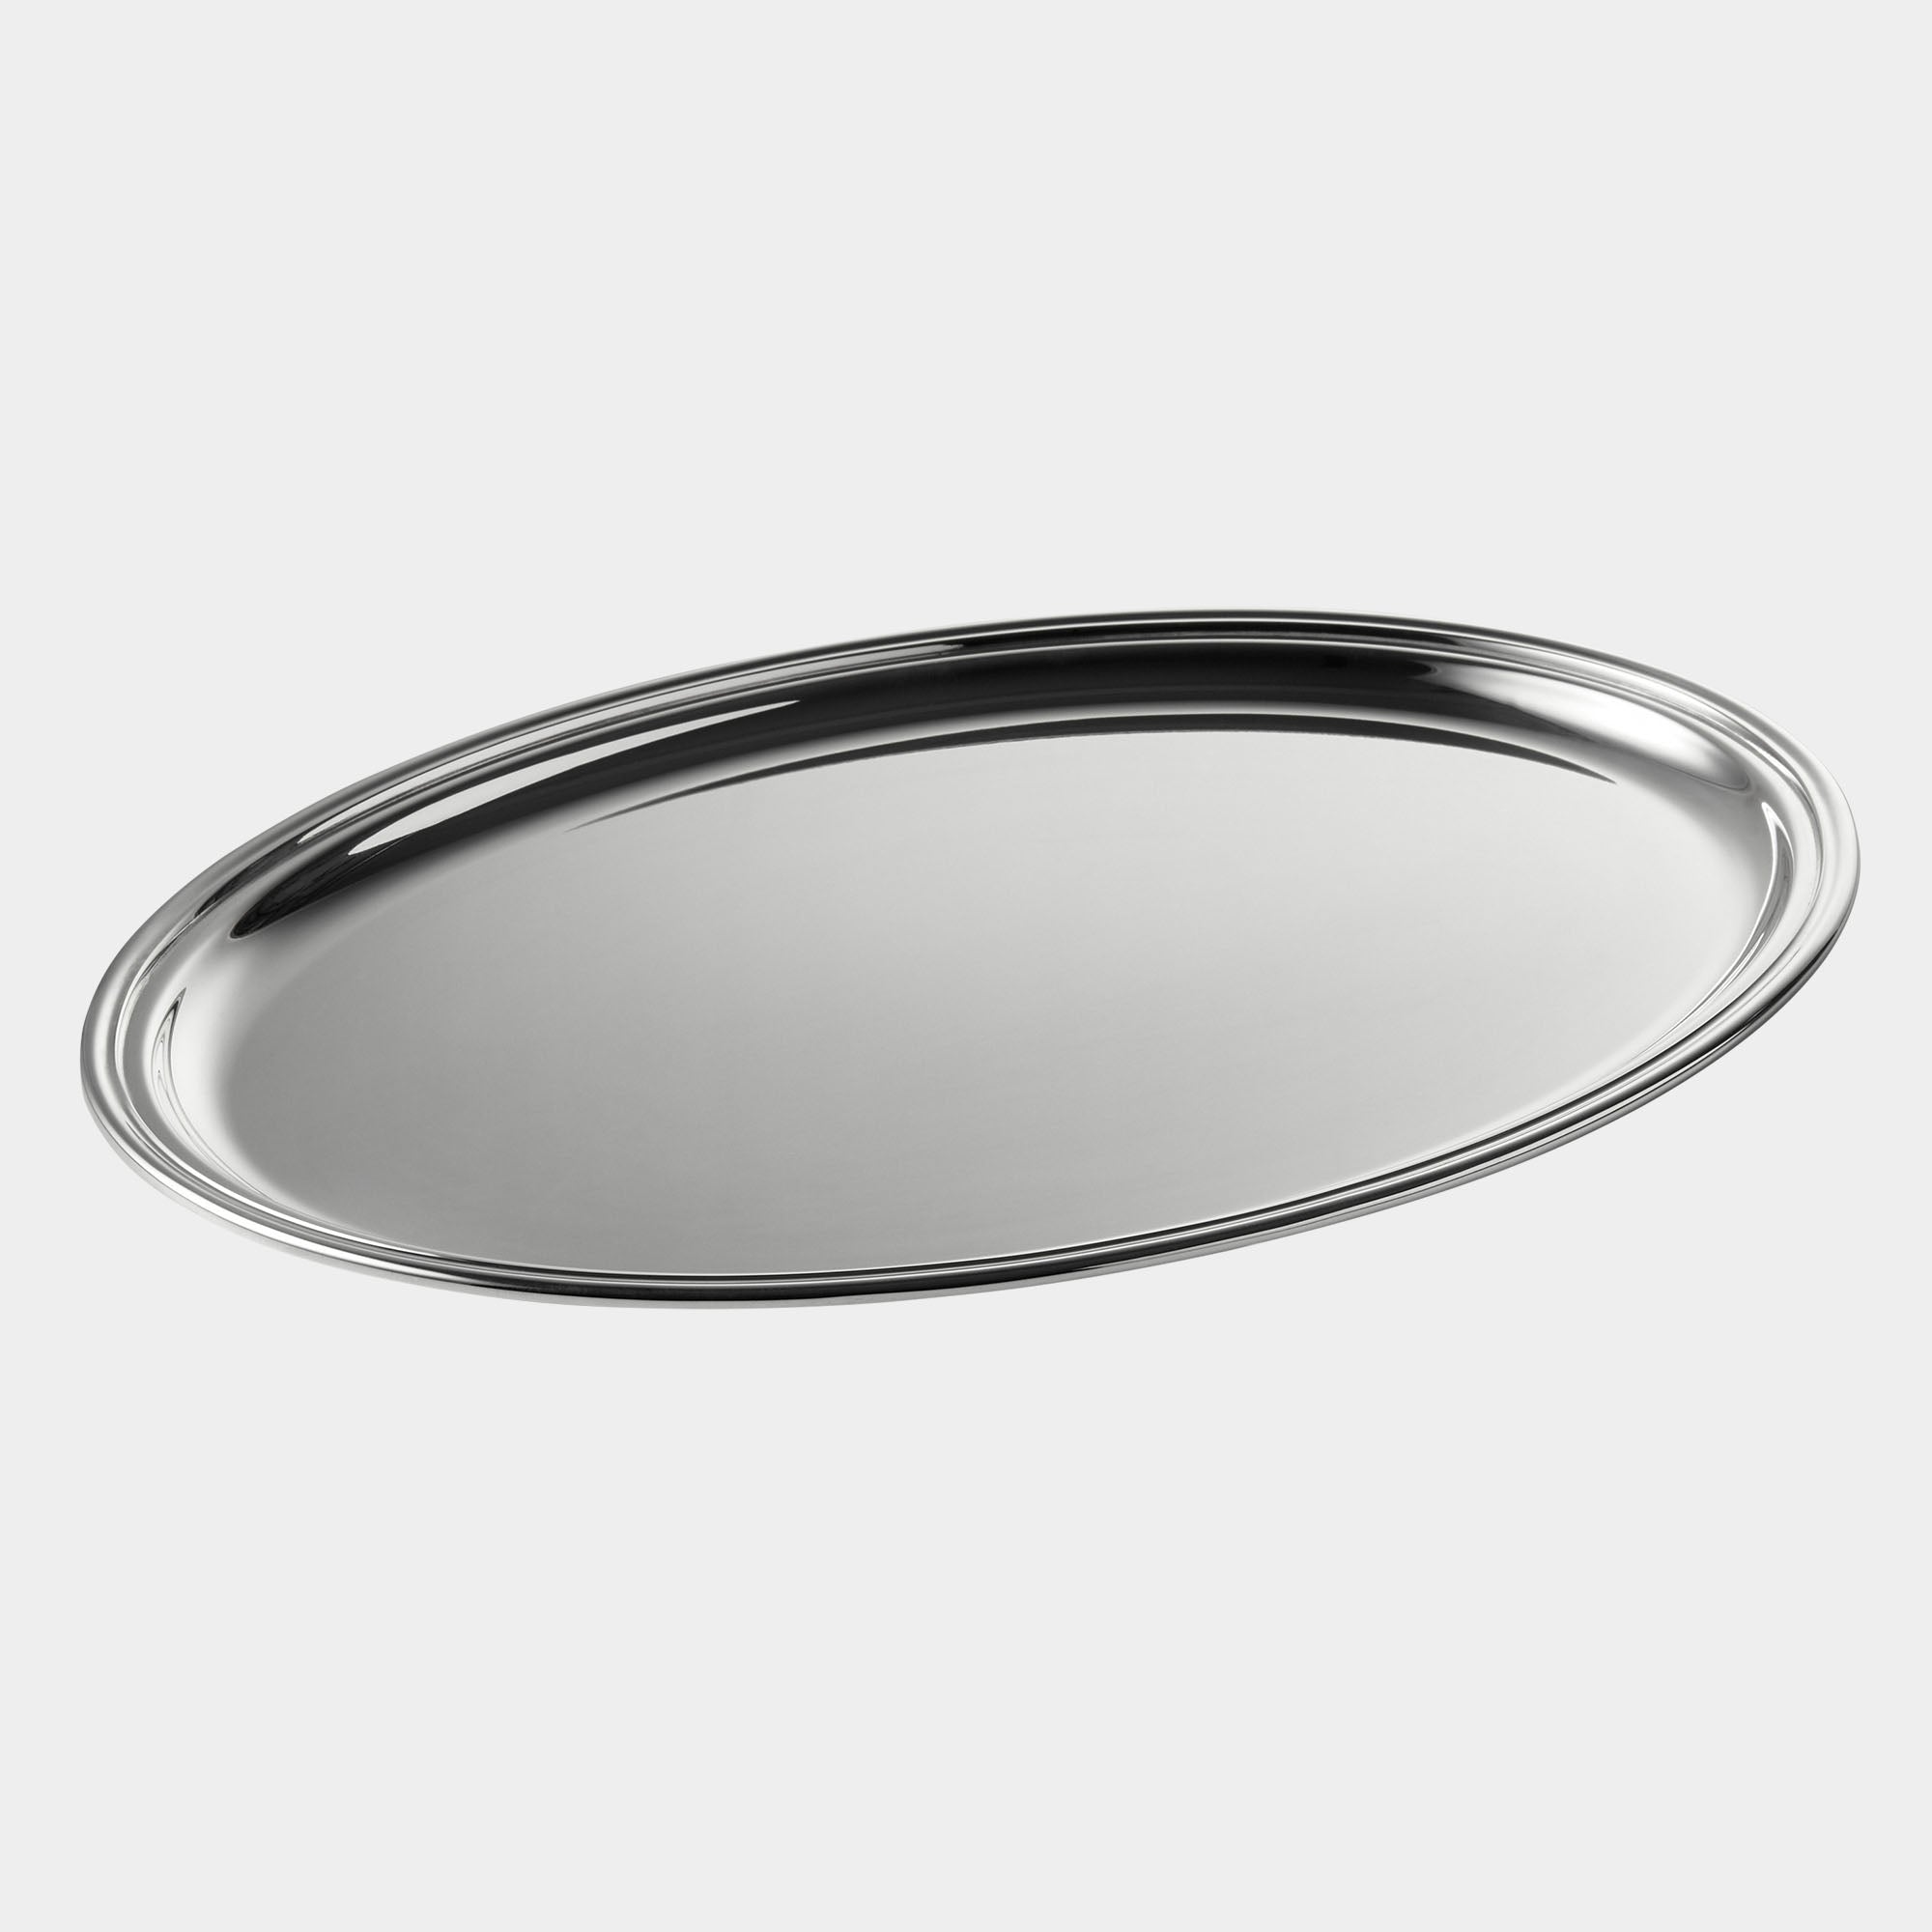 Elegantes 925er Echtsilber Oval-Tablett - Bild 1